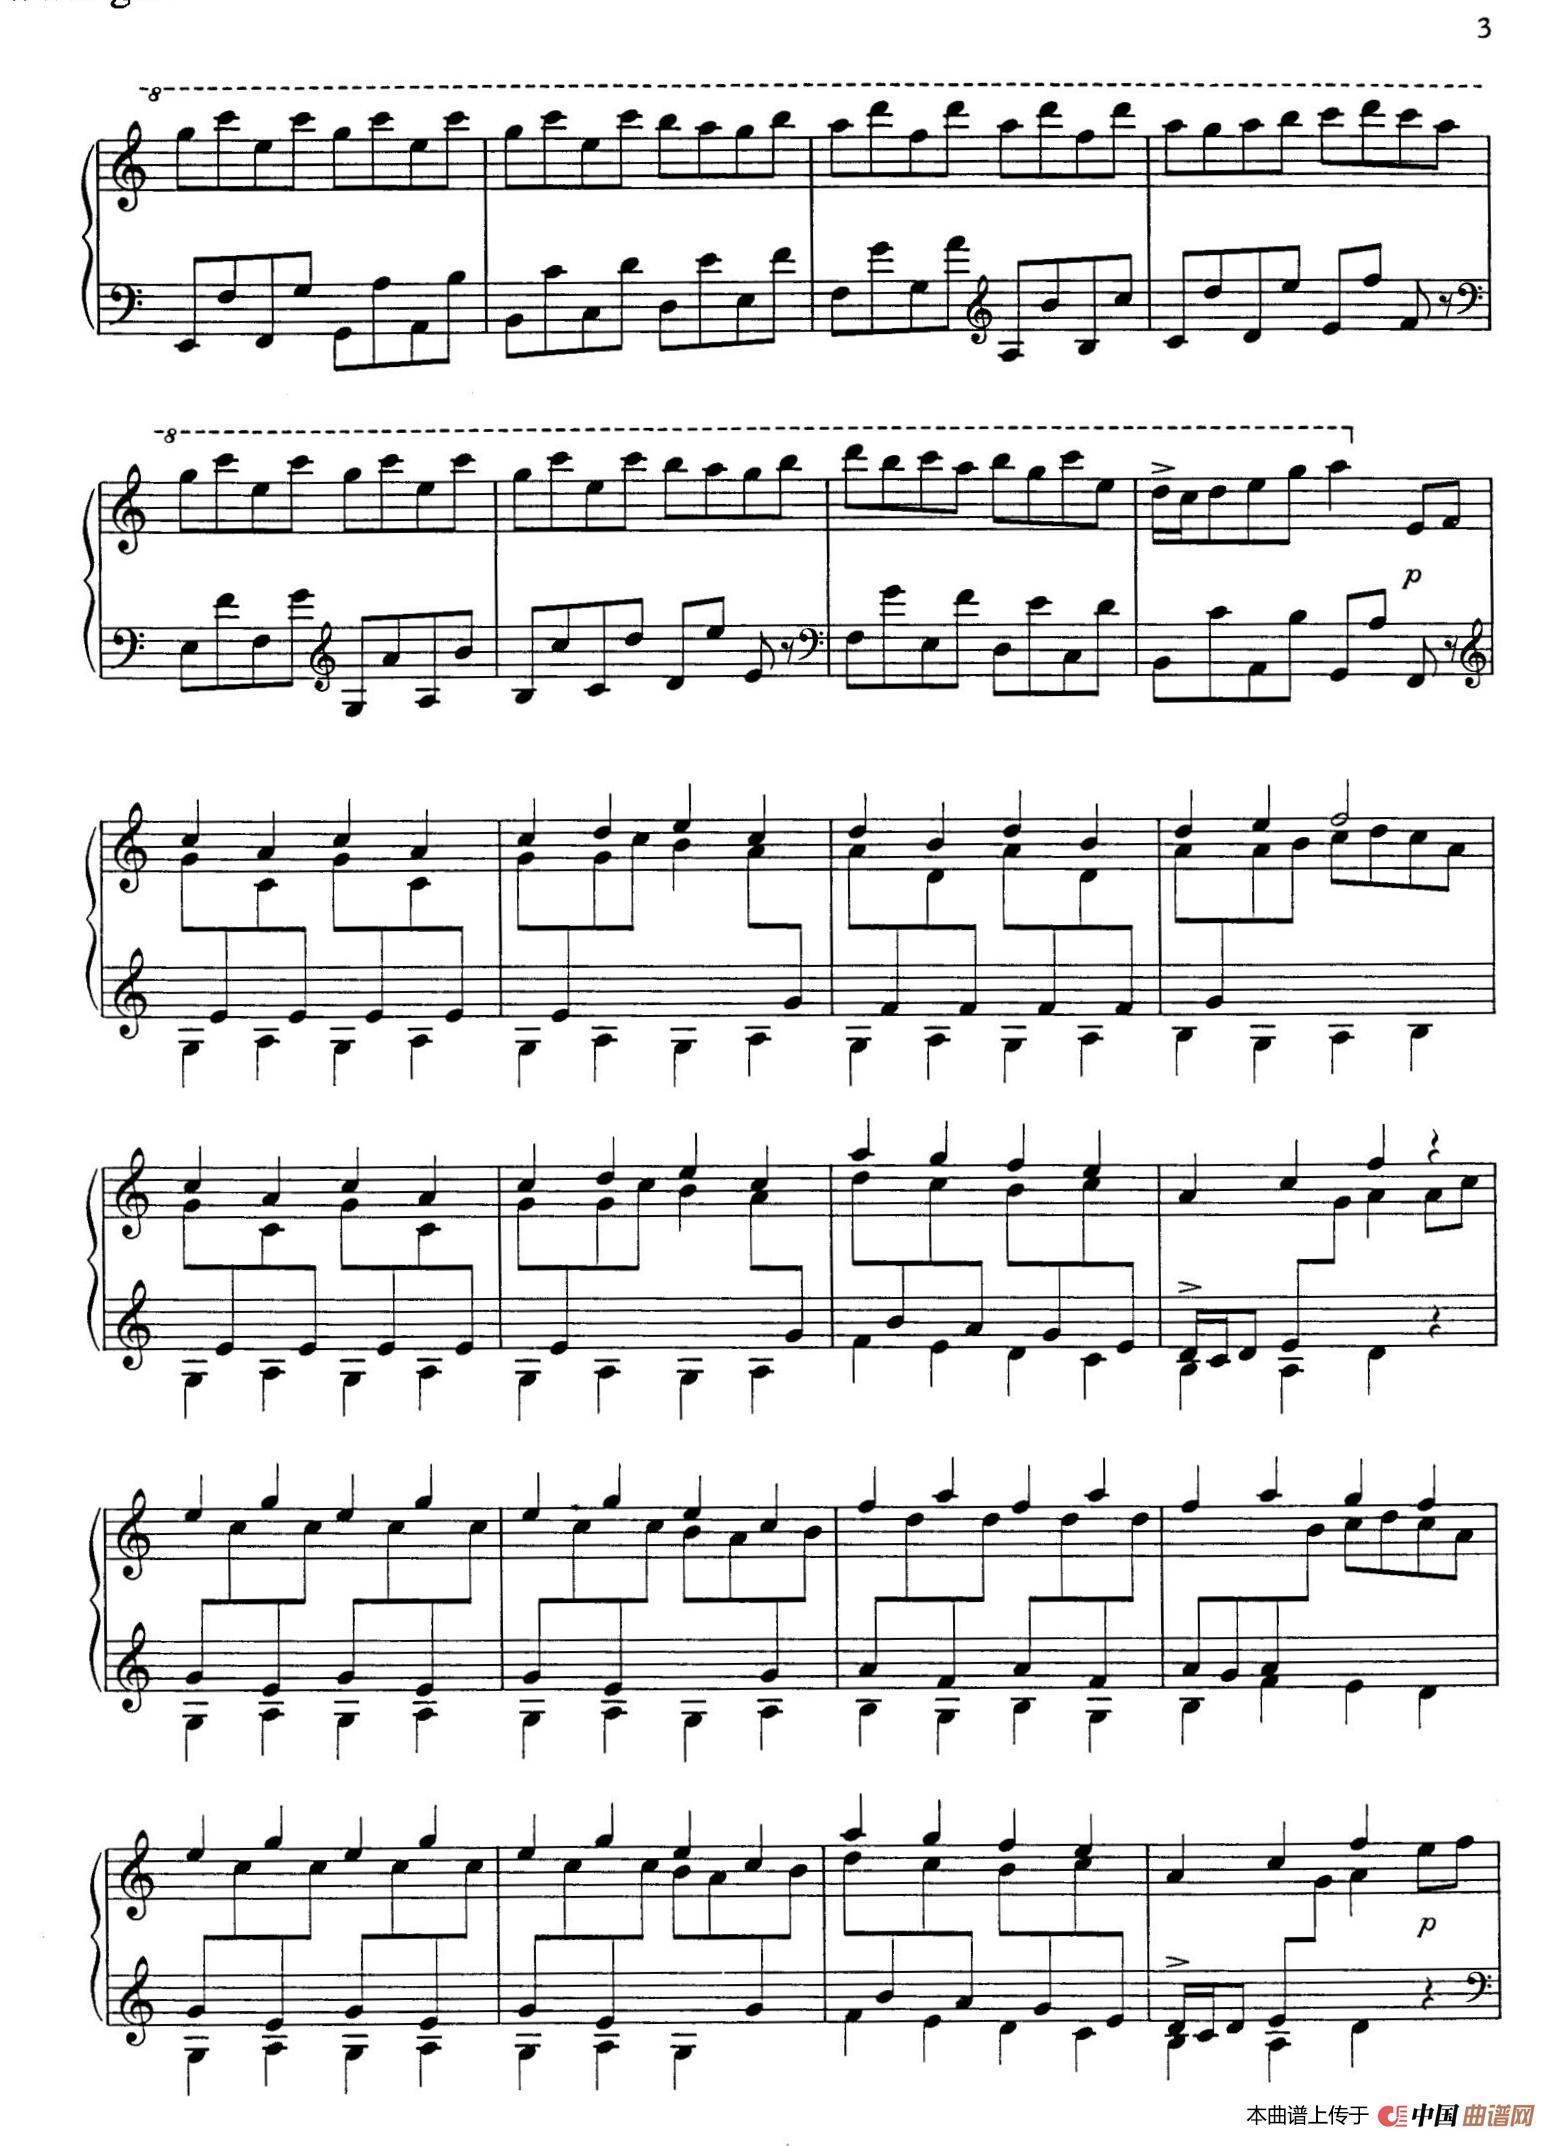 《Toccata for Piano H.153》钢琴曲谱图分享